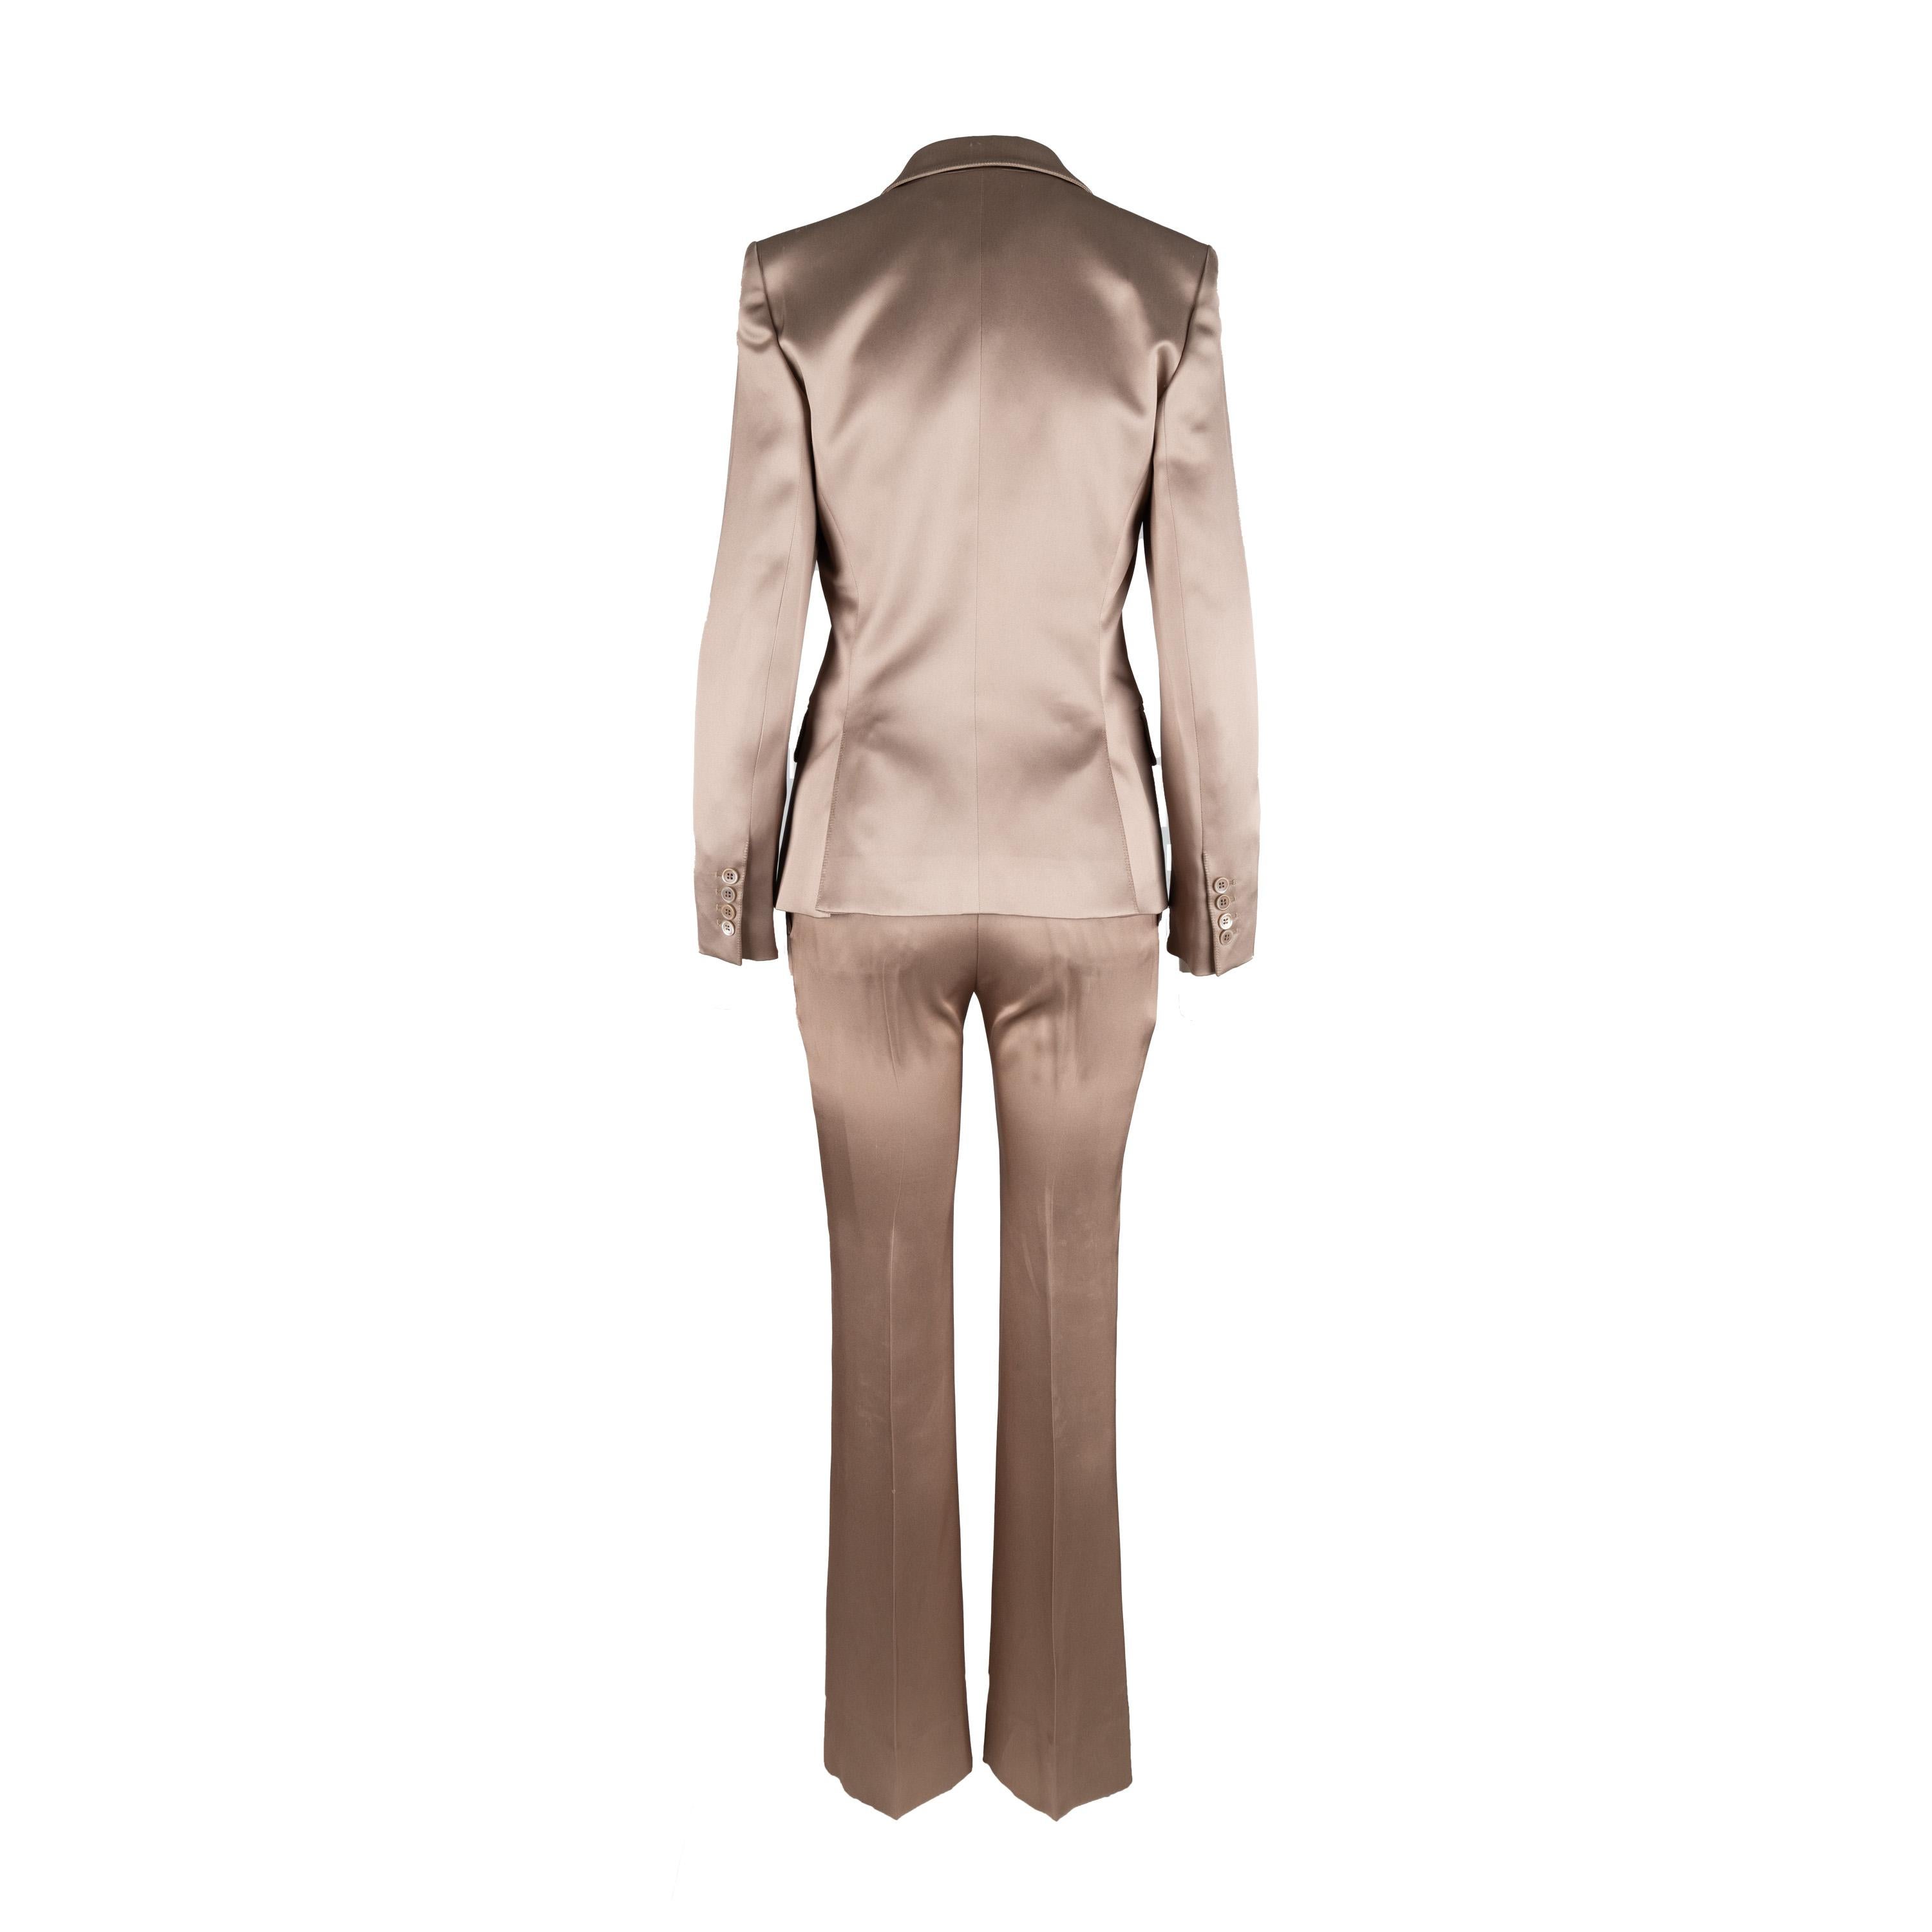 Ce tailleur en soie Yves Saint Laurent, conçu par Tom Ford vers les années 2000, est confectionné de manière experte en 100 % soie dans une teinte beige subtilement brillante. Il est doté d'un col à revers, d'un bouton sur le devant, de deux poches